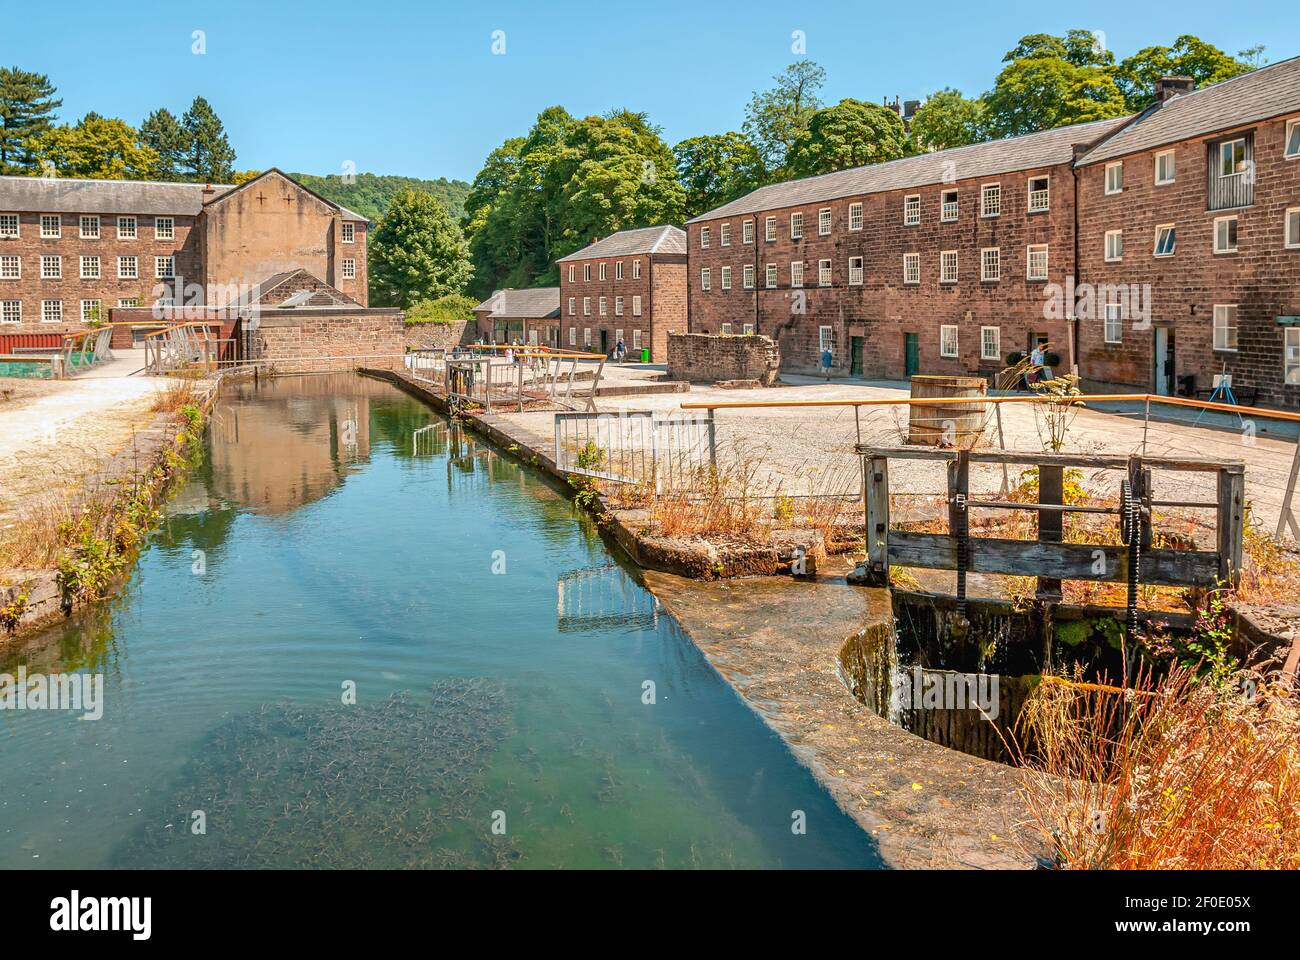 Cromford Mill usine de filature de coton à eau à Cromford, Derbyshire, Angleterre Banque D'Images